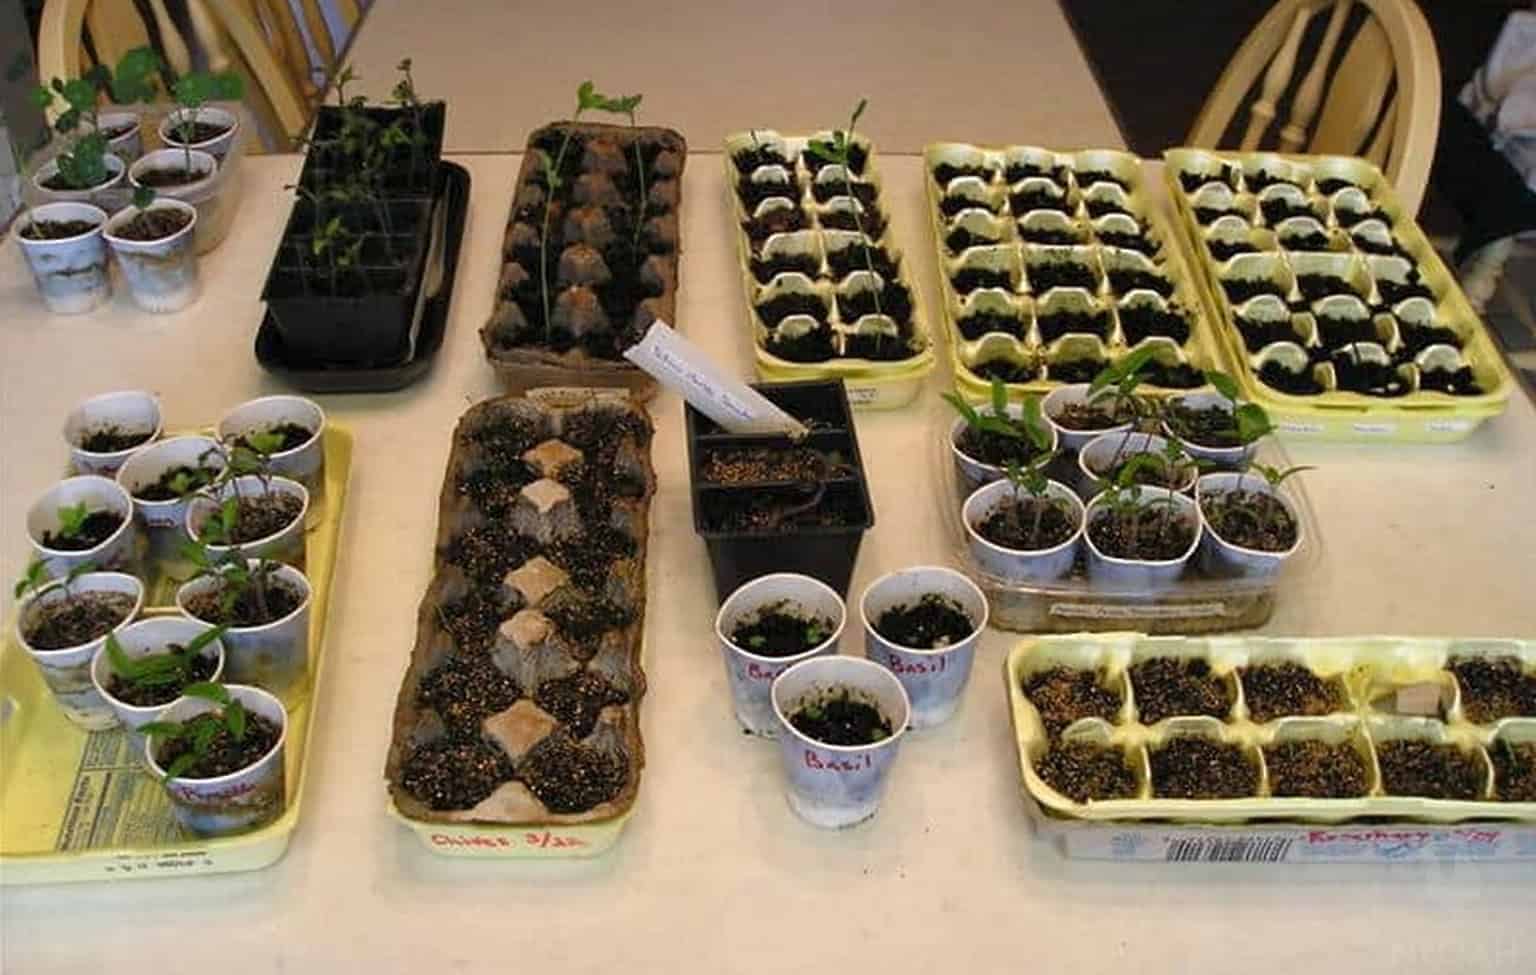 various seedlings growing indoors in plastic cups and egg cartons.jpg